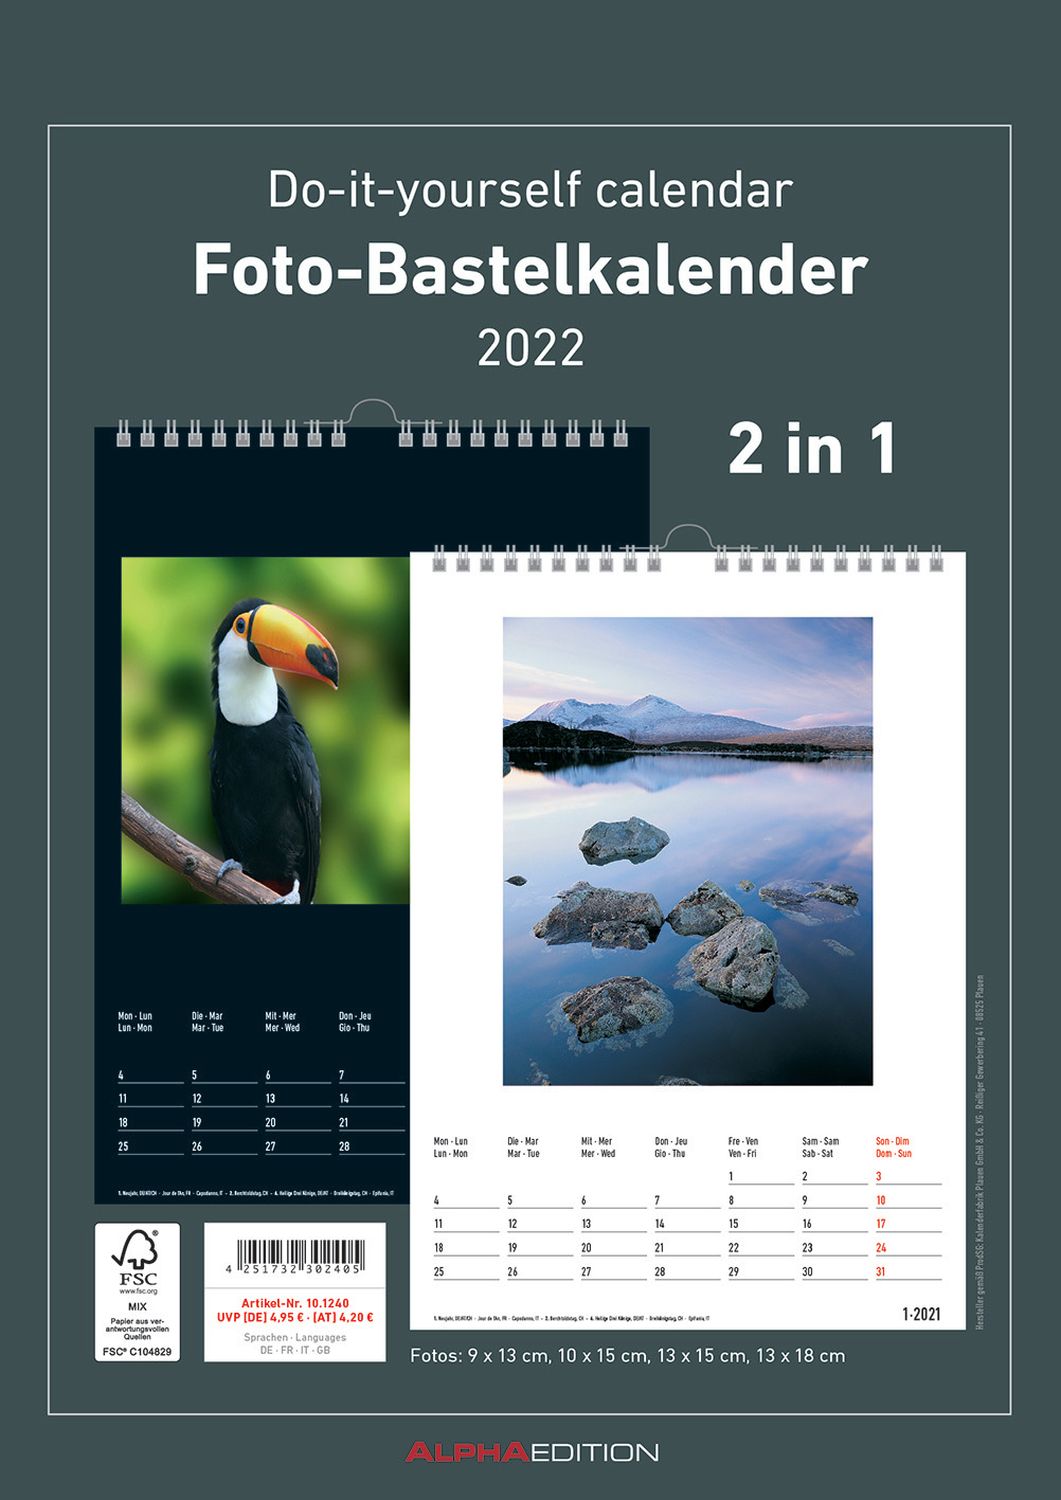 Bastelkalender - 21 x 29,7 cm, 2 in 1 - schwarz/weiß